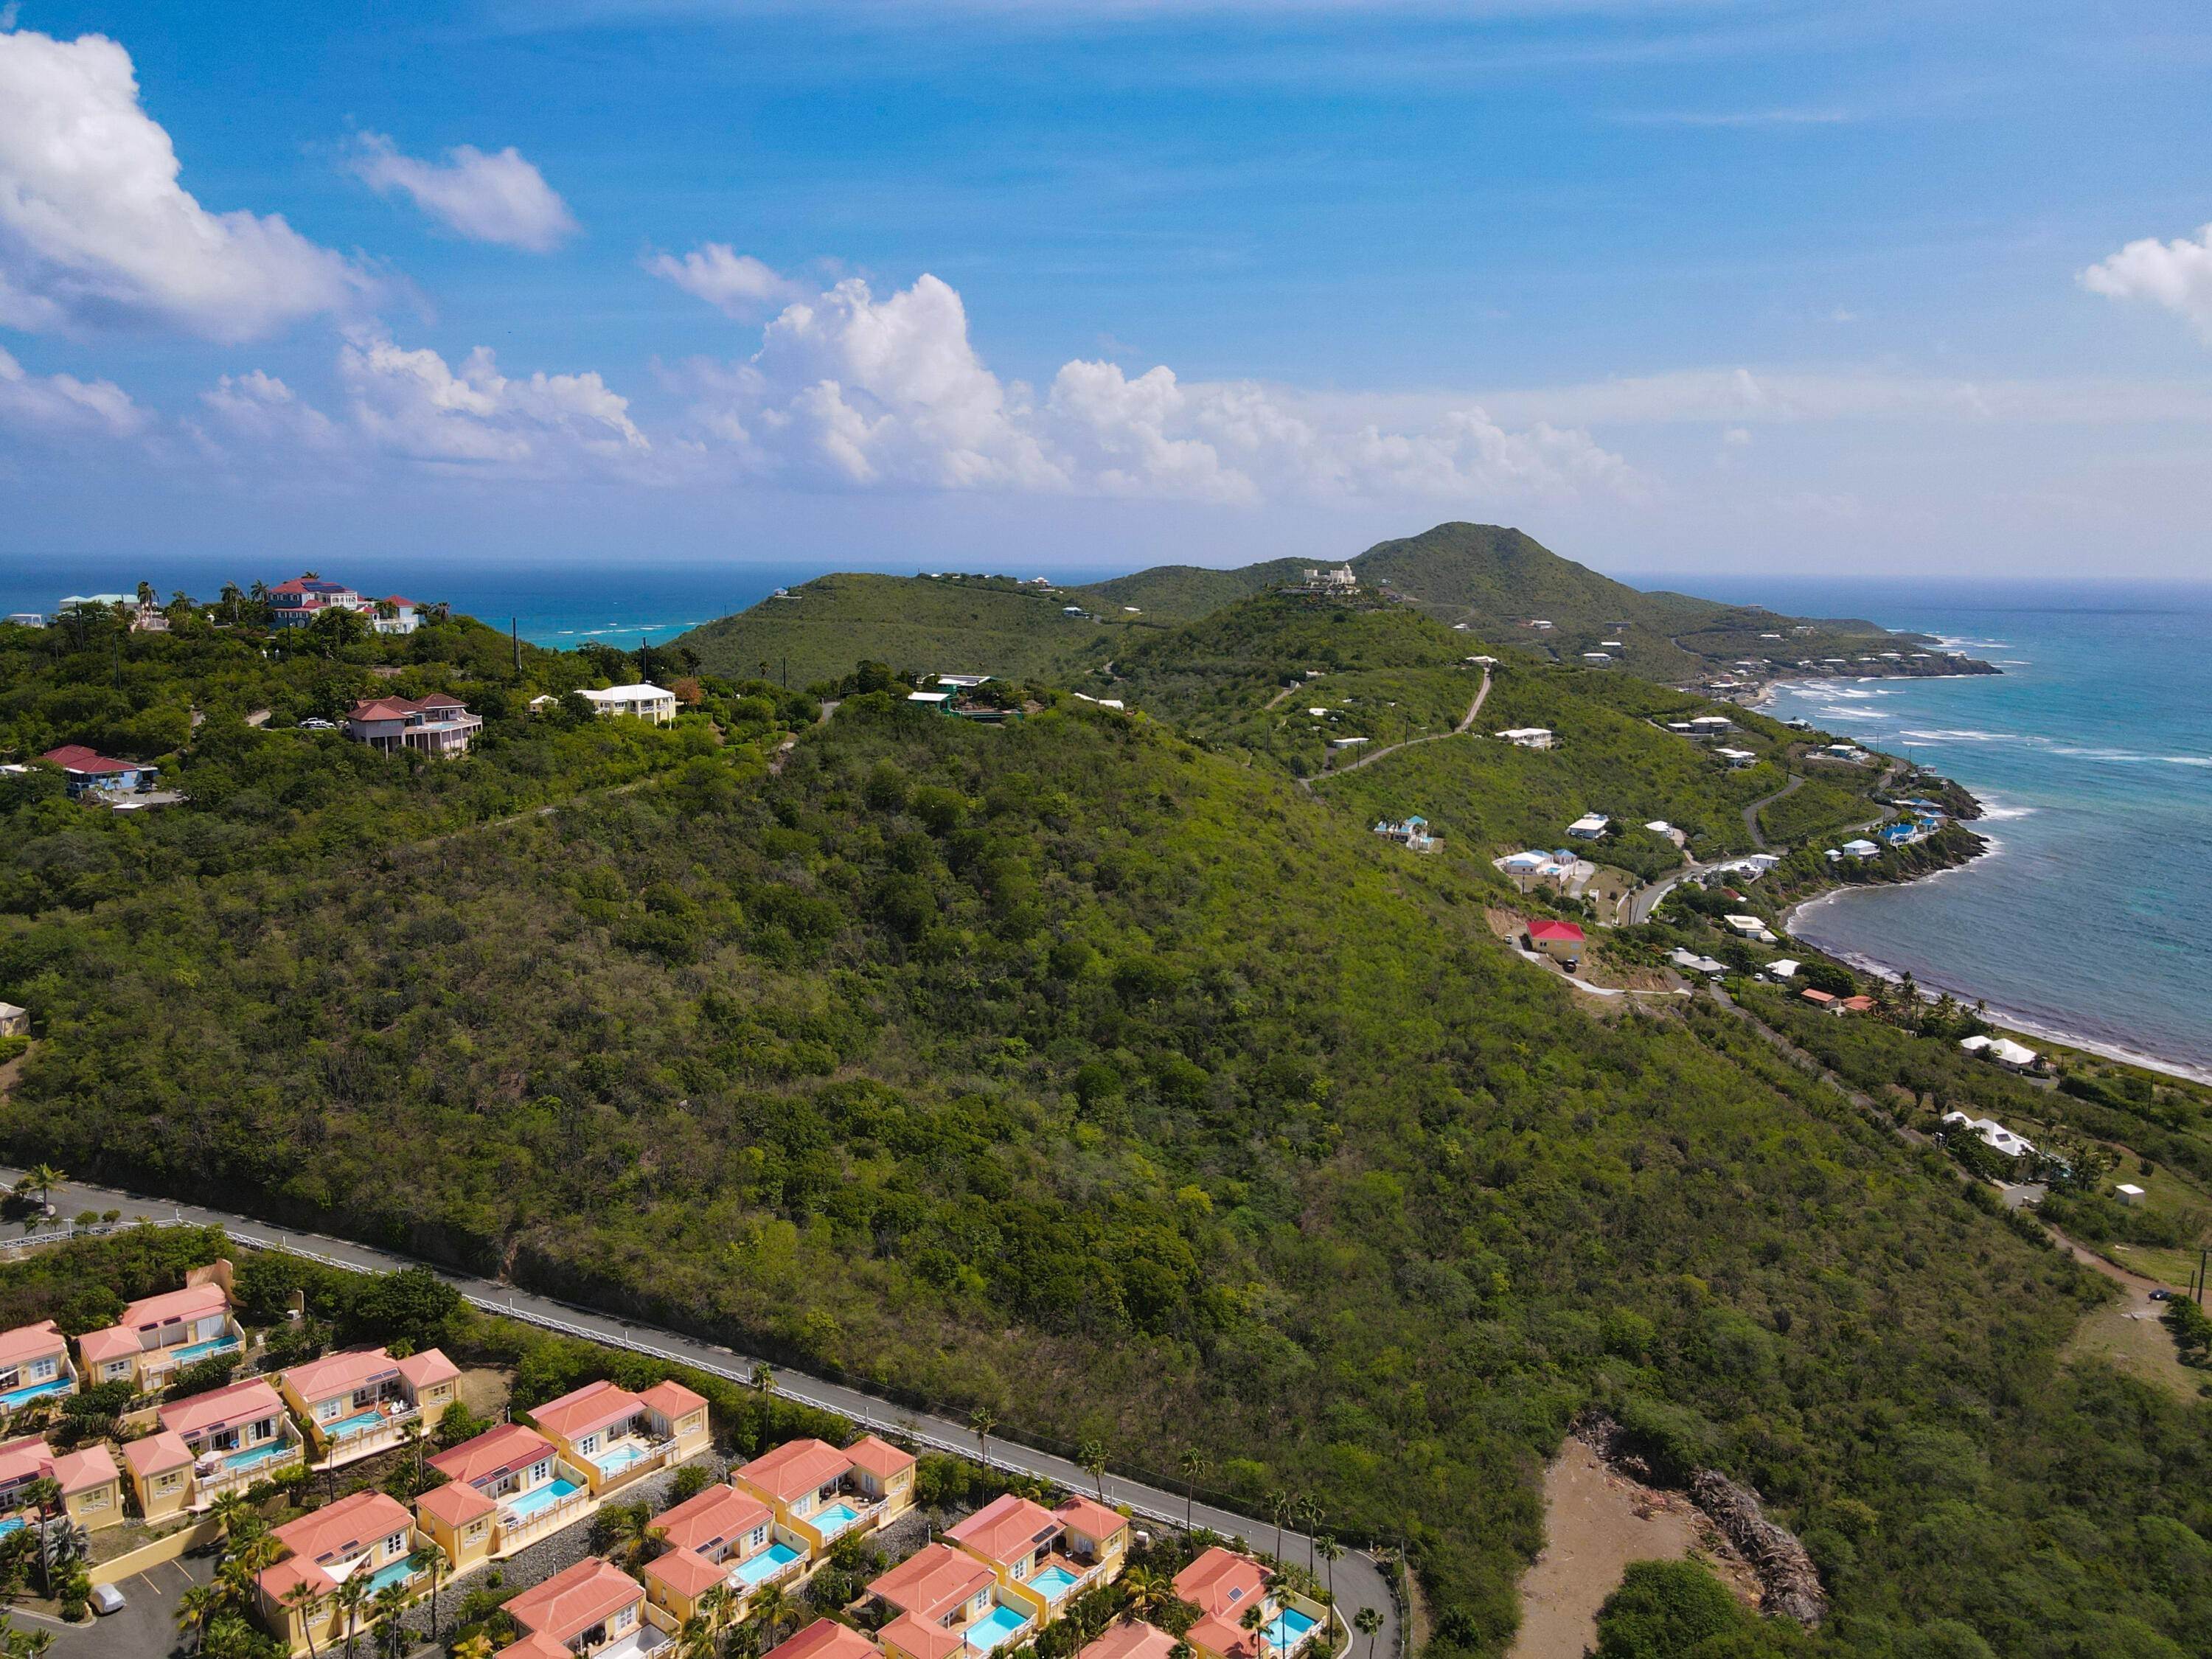 Land for Sale at REM 5 Teagues Bay EB St Croix, Virgin Islands 00820 United States Virgin Islands